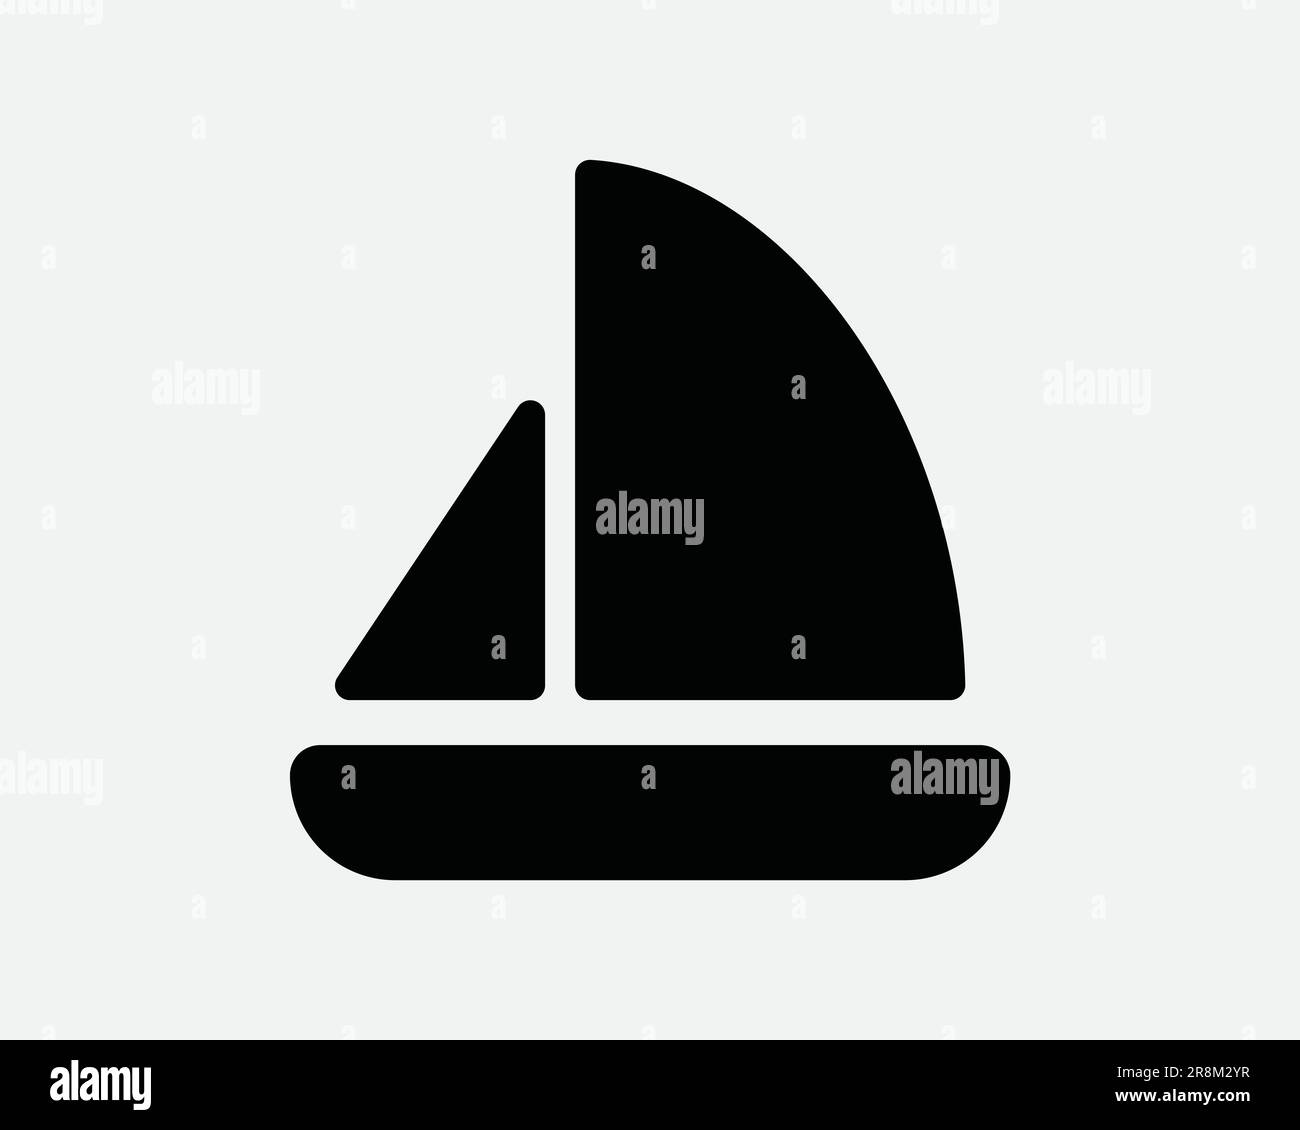 Segelboot-Symbol. Segelboot Yachtschiff Wasser Meer Schifffahrt Schwarz-Weiß-Schild Symbol Illustration Kunstwerk Clipart EPS-Vektor Stock Vektor